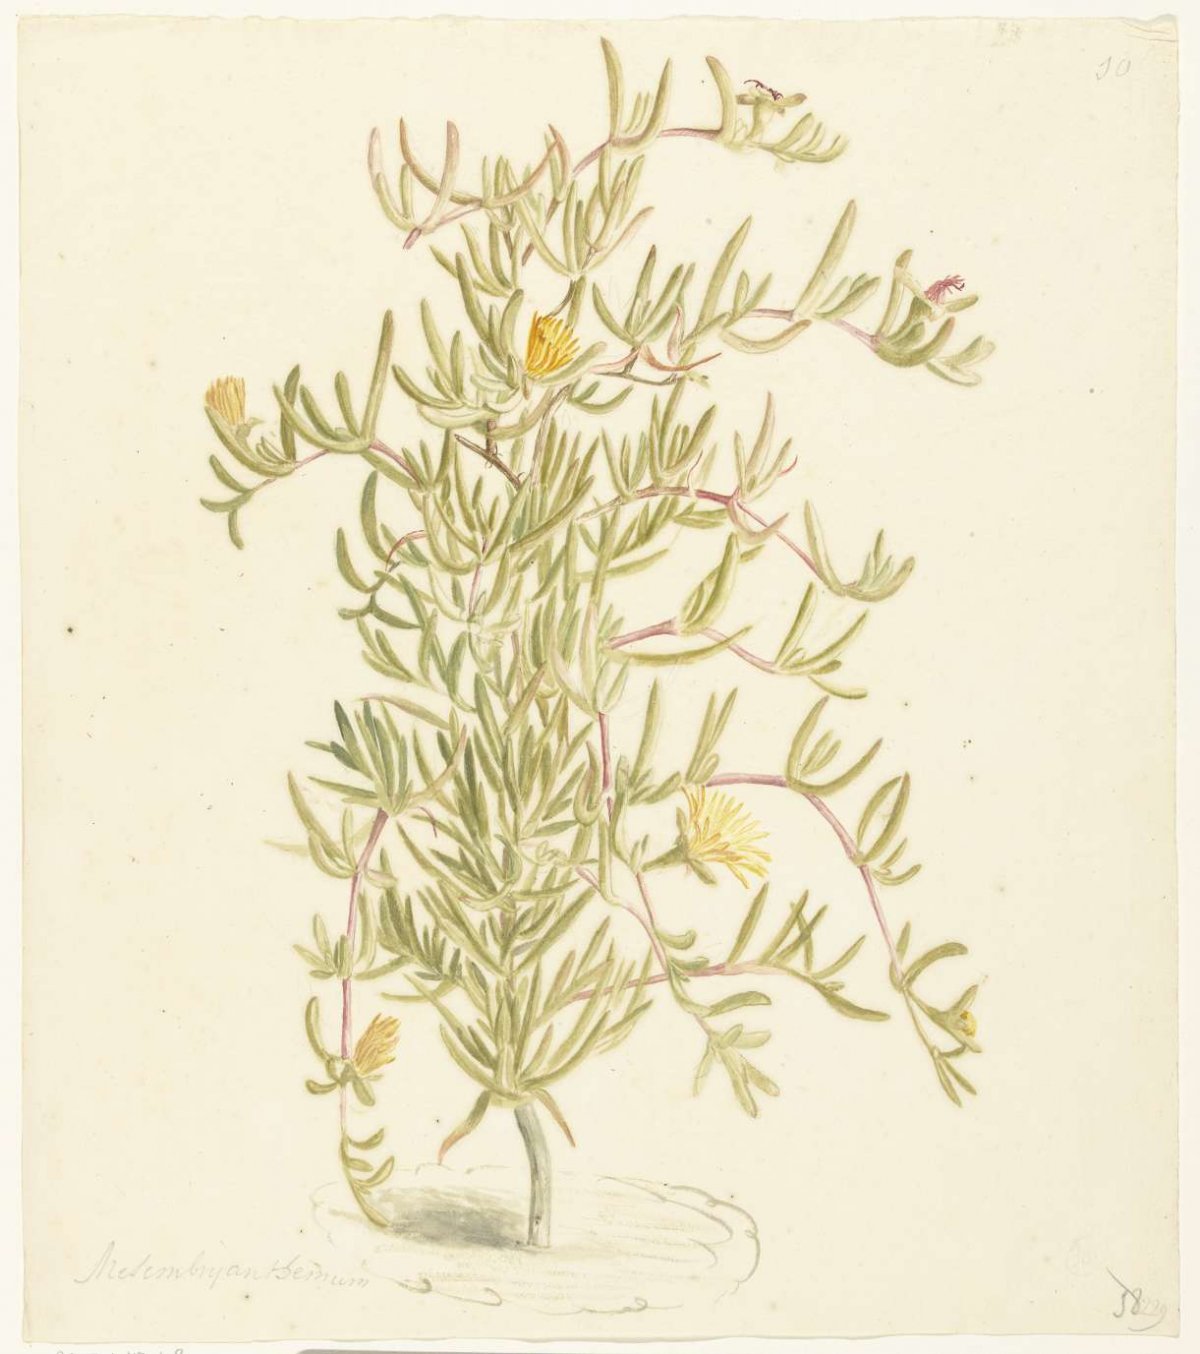 Flowering Mesembryanthemum in the Aizoaceae family, Laurens Vincentsz. van der Vinne, 1668 - 1729